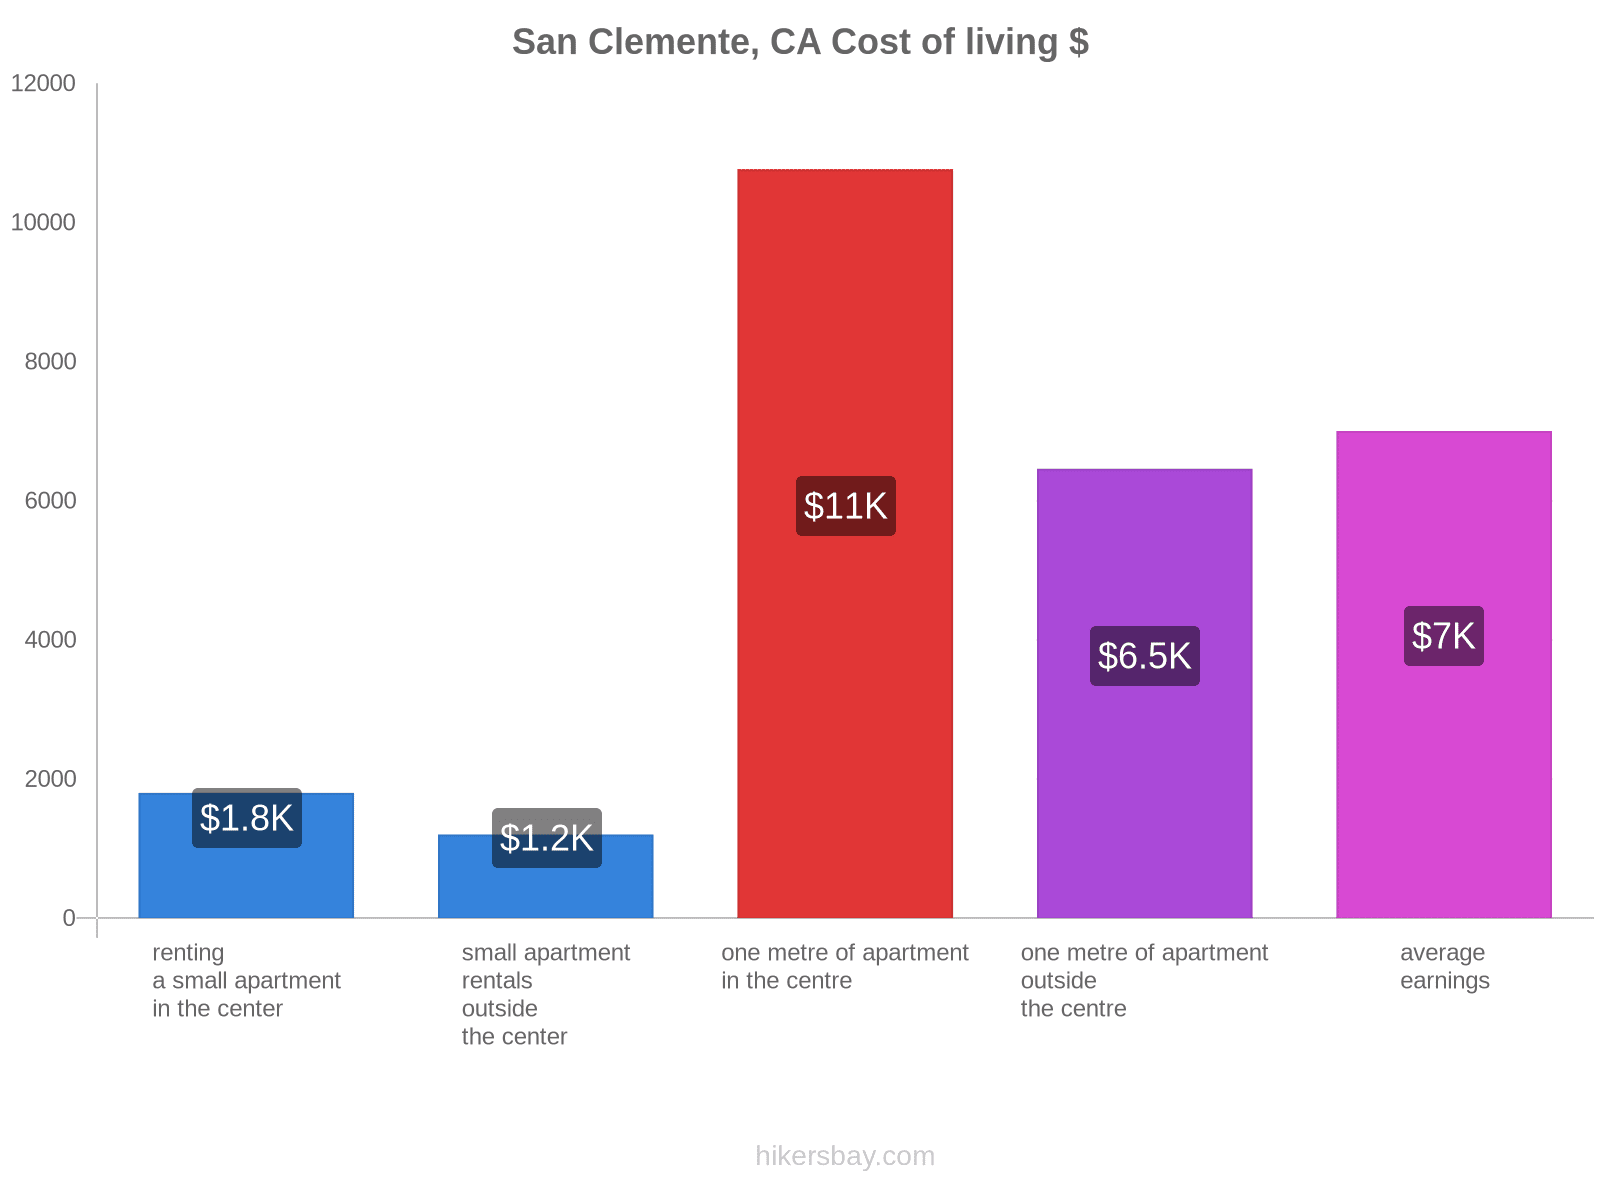 San Clemente, CA cost of living hikersbay.com